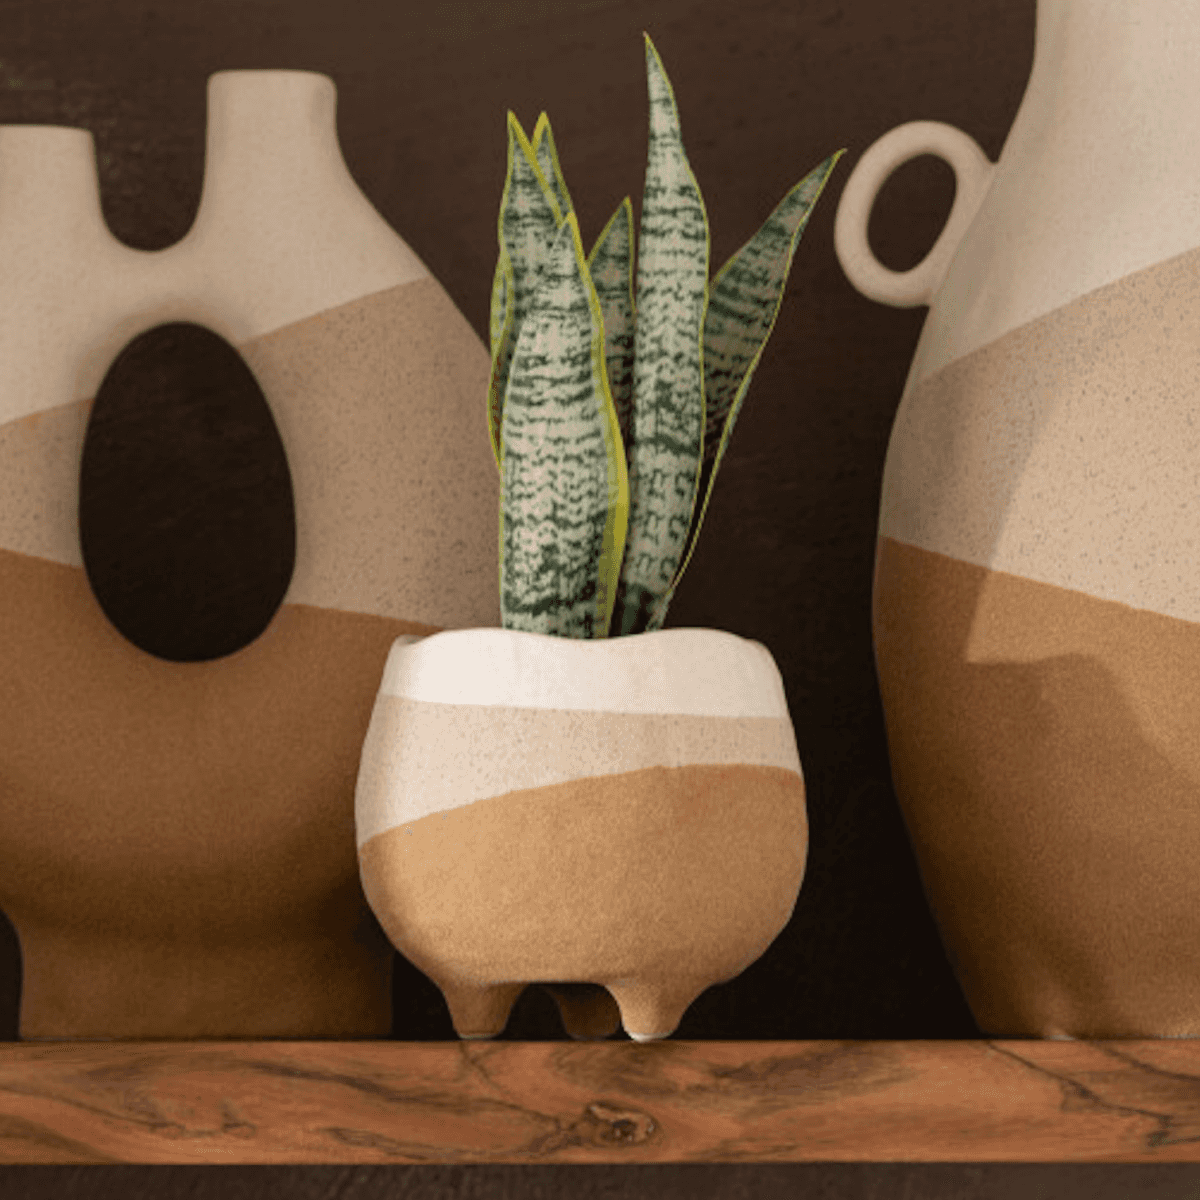 Immagine del prodotto Vaso con Piedini in Ceramica - 2 Misure | Jolipa